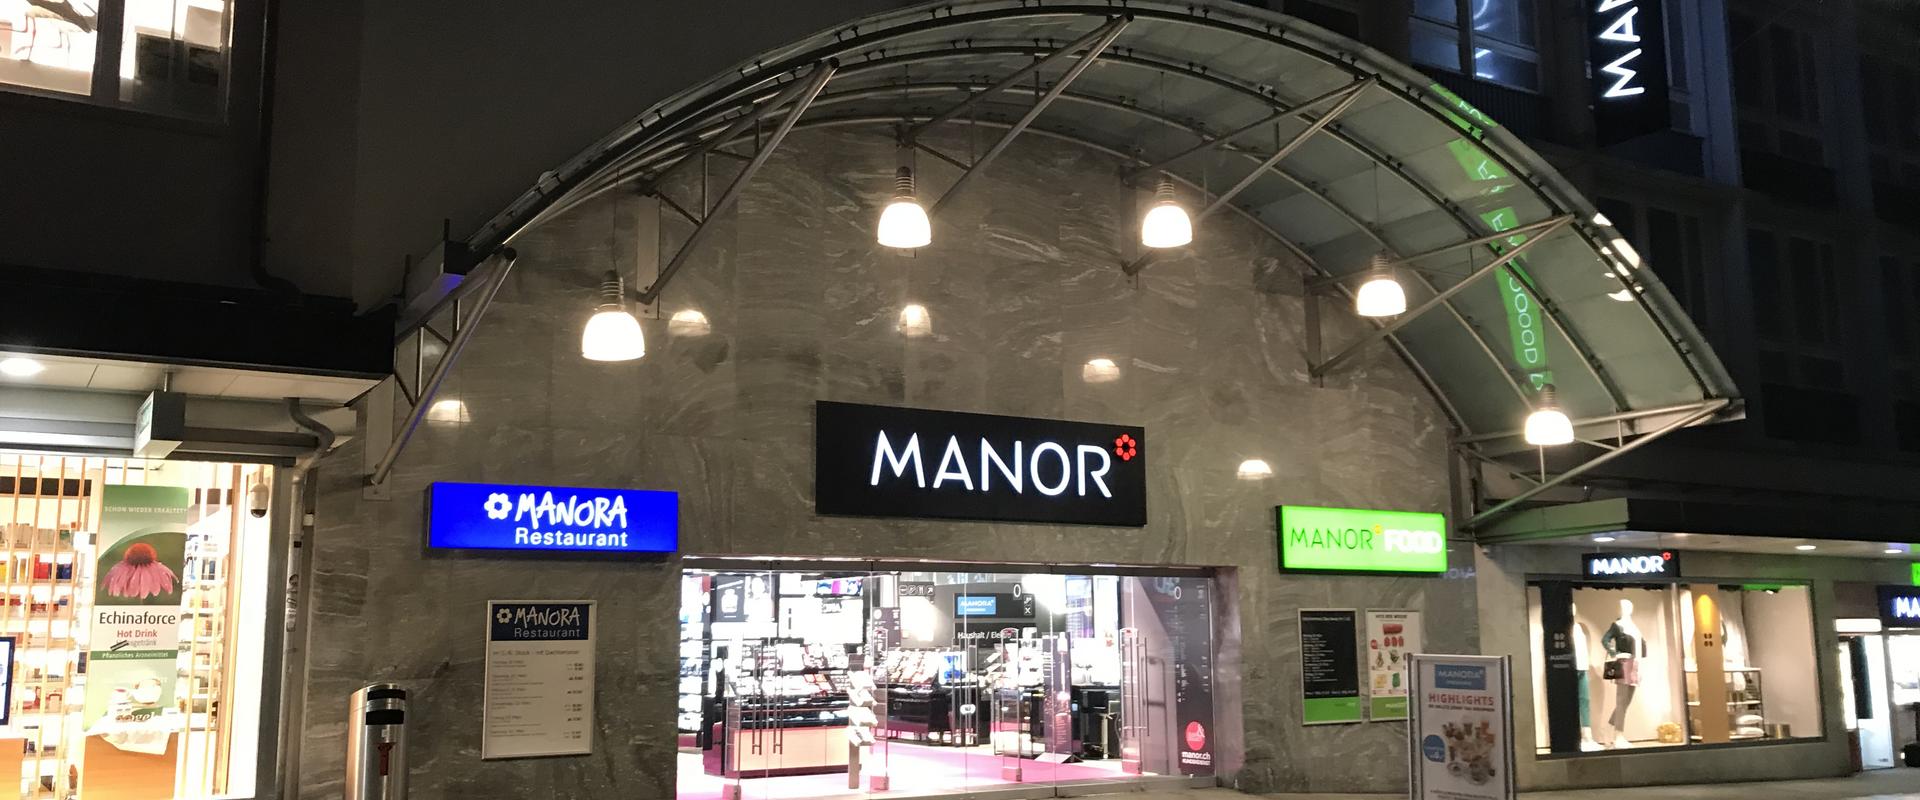 Manor mit Manora Restaurant